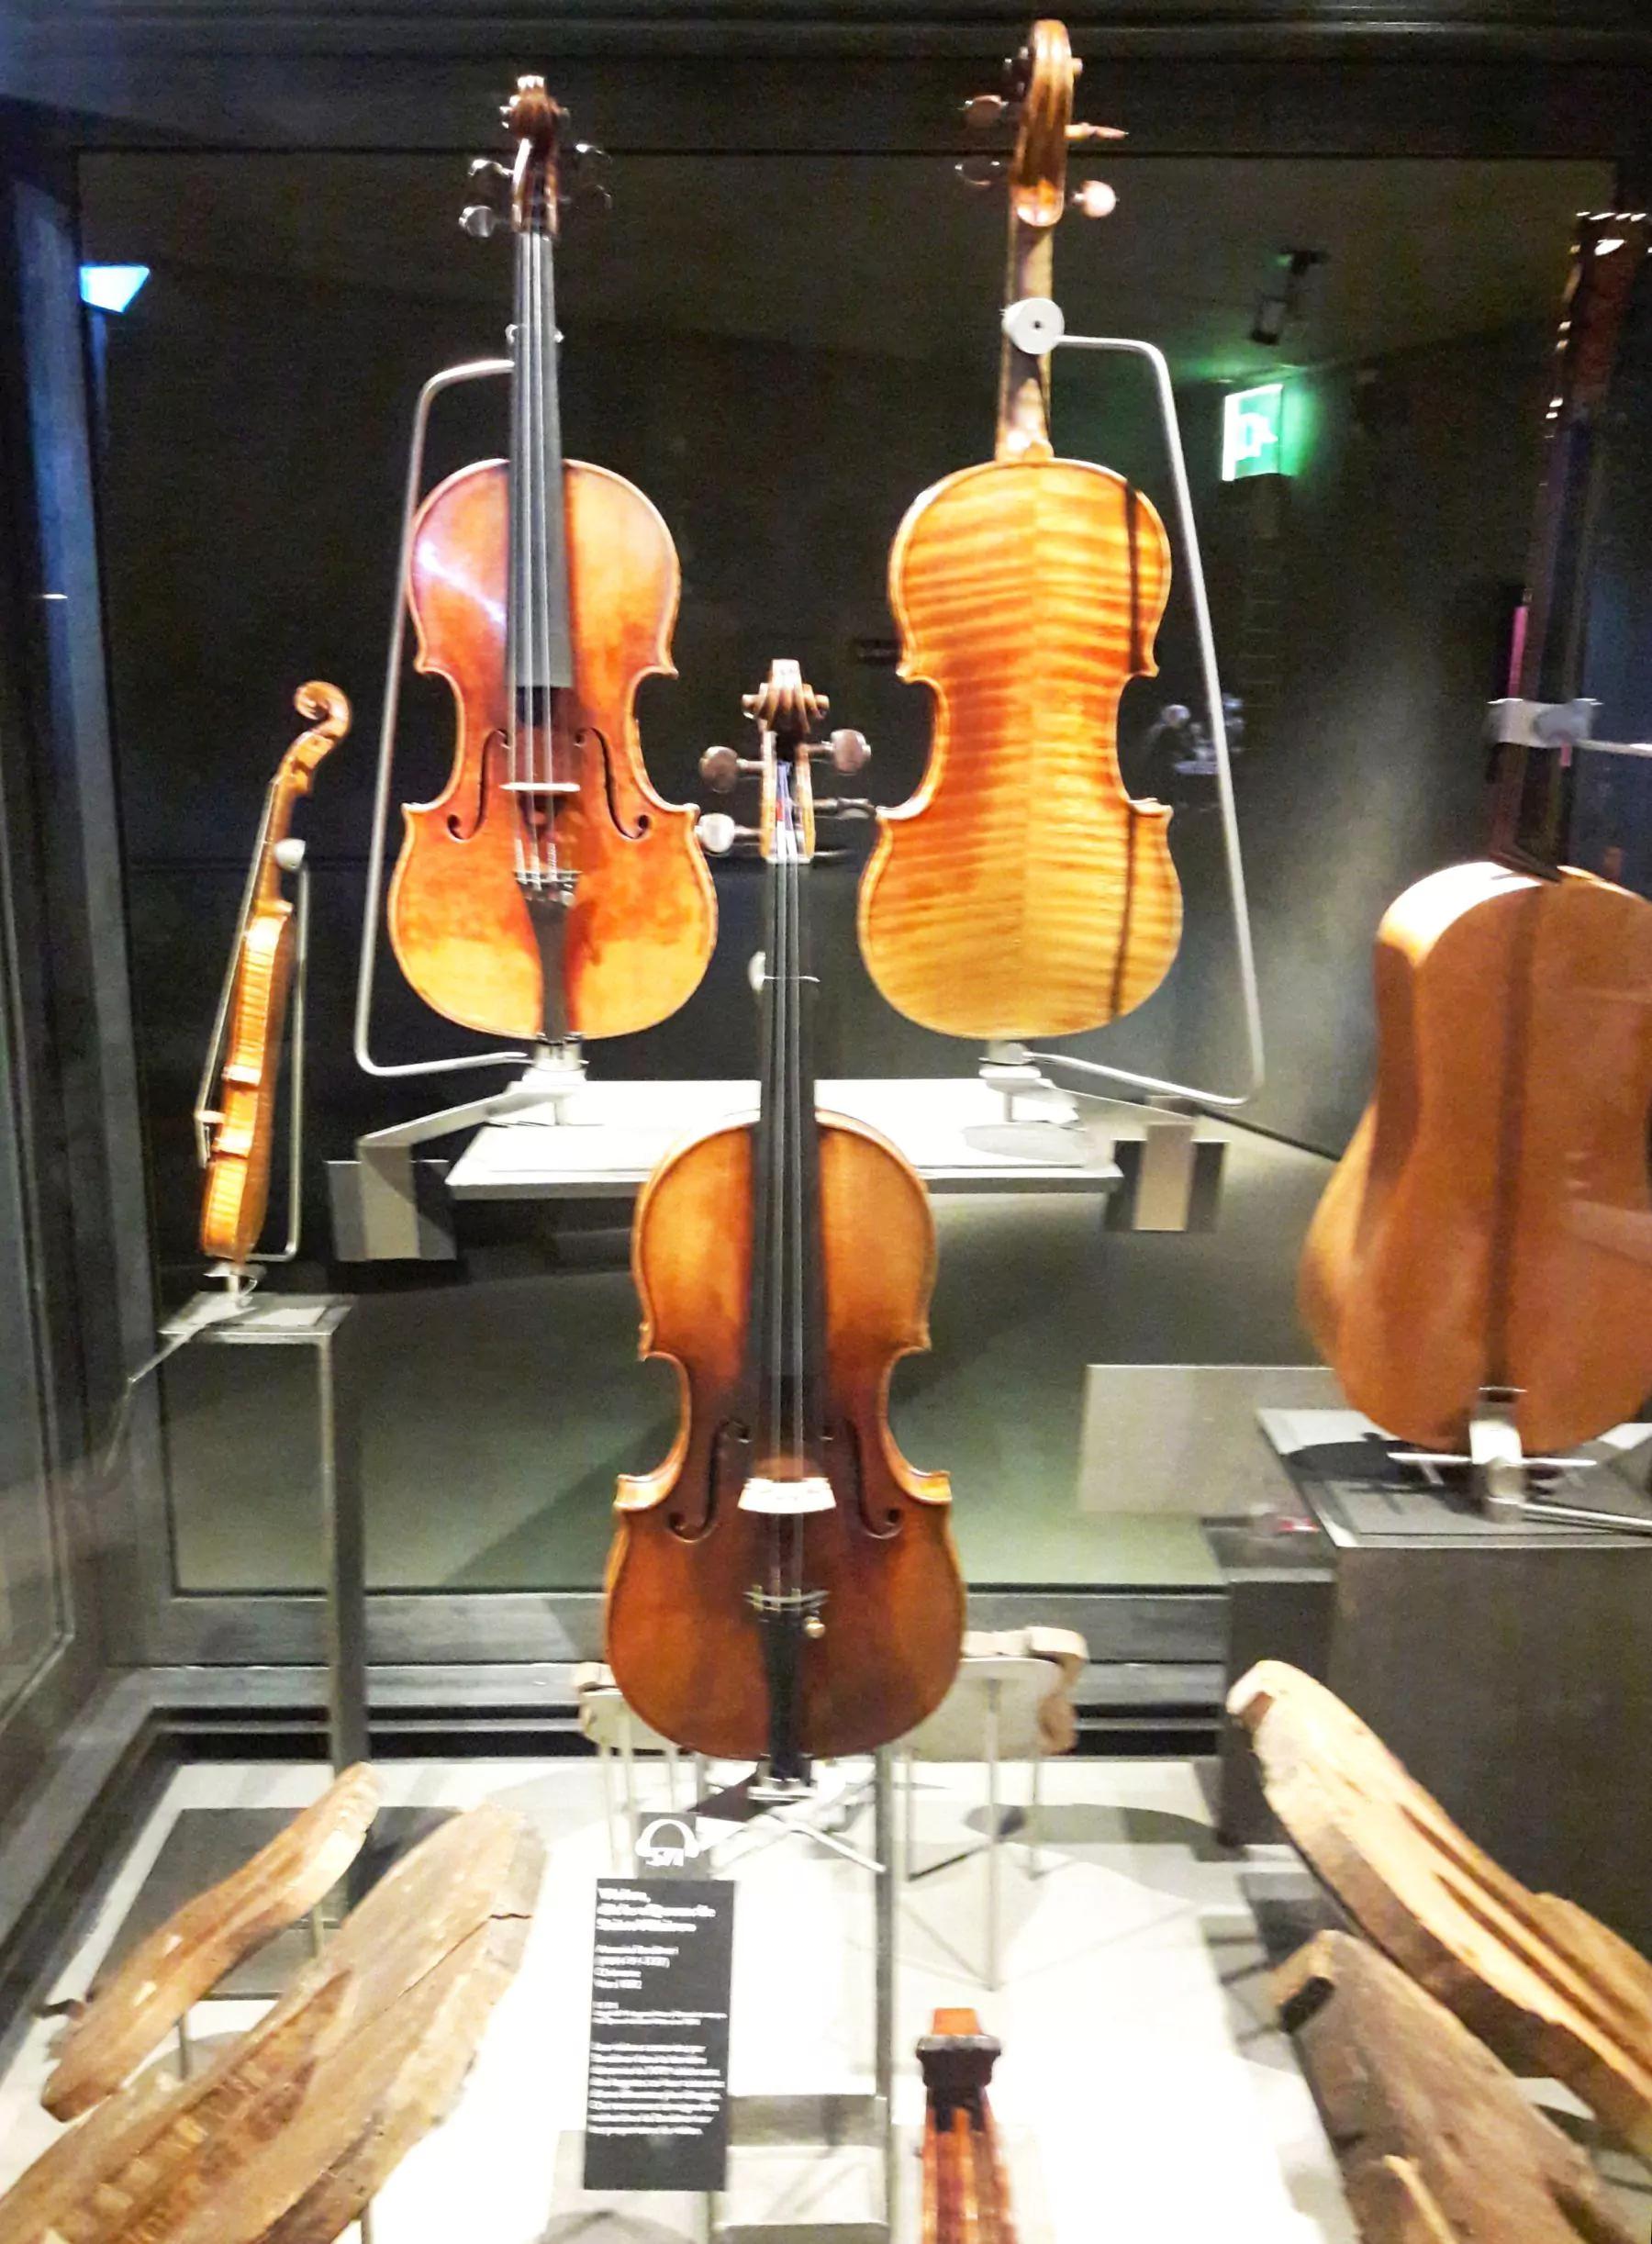 El Valor Inestimable De Los Violines Cortos: Joyas Musicales Vanessa Mae